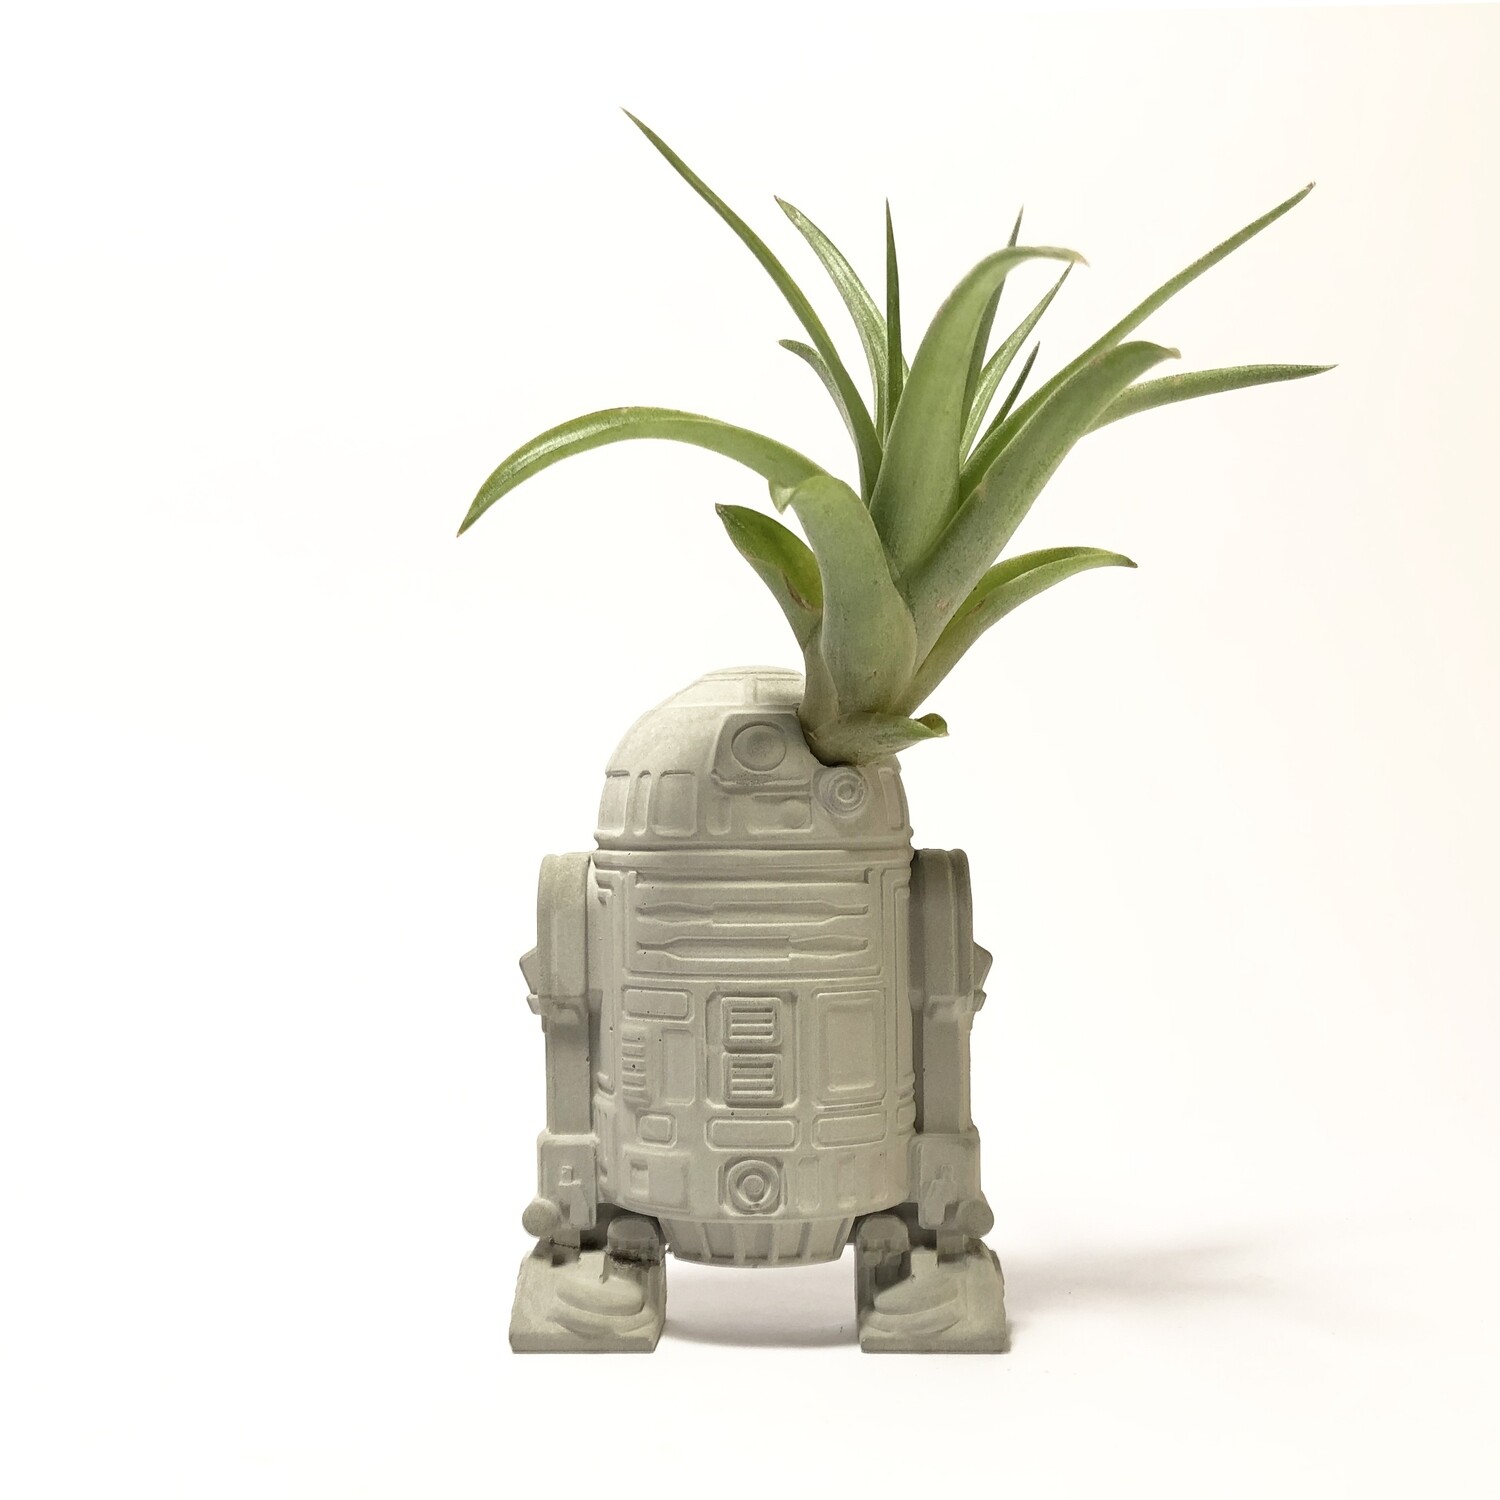 Piccolo R2-D2 Star Wars vaso Piante Aeree in cemento